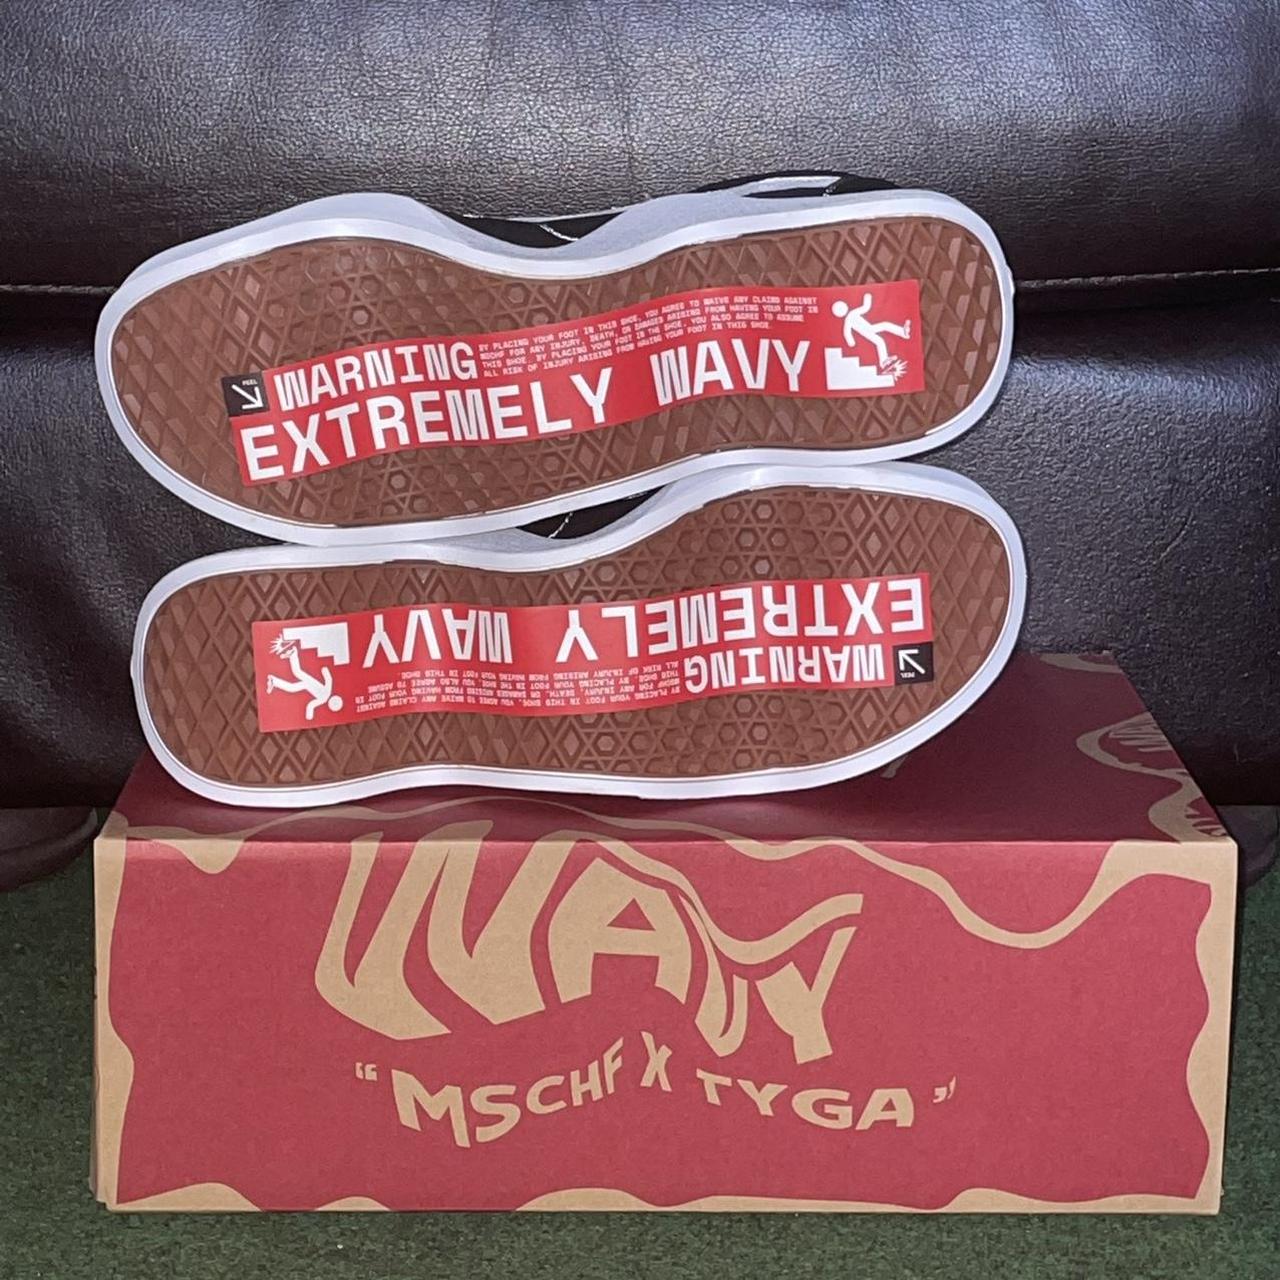 MSCHF x Tyga 'Wavy Baby' Black / White Low Top Sneakers - Sneak in Peace